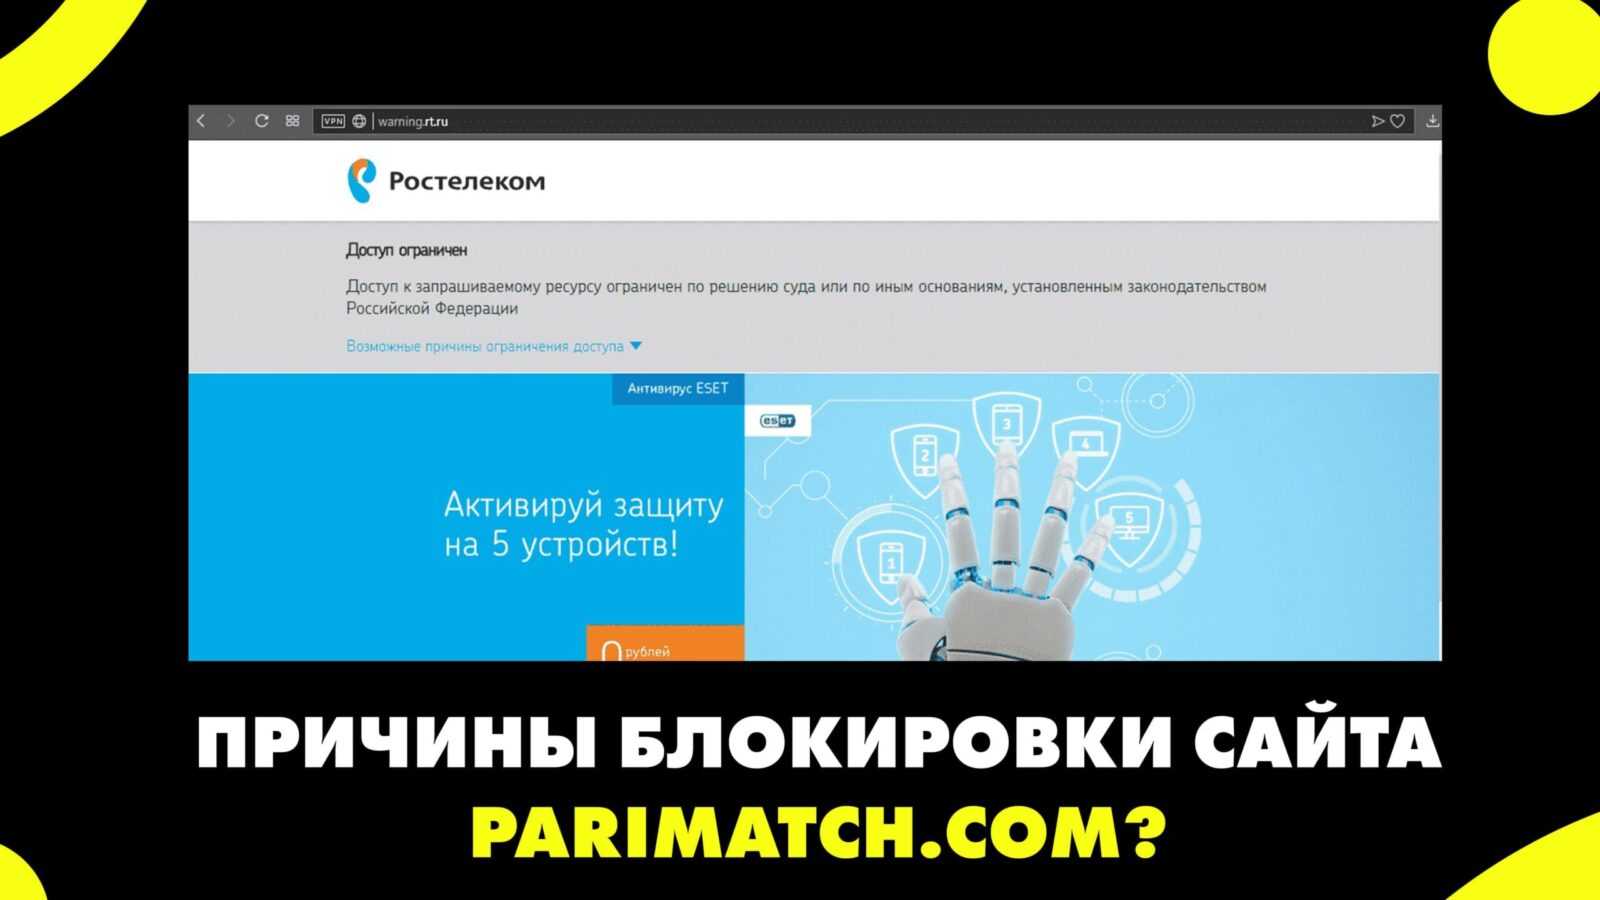 Почему международный сайт parimatch заблокирован?